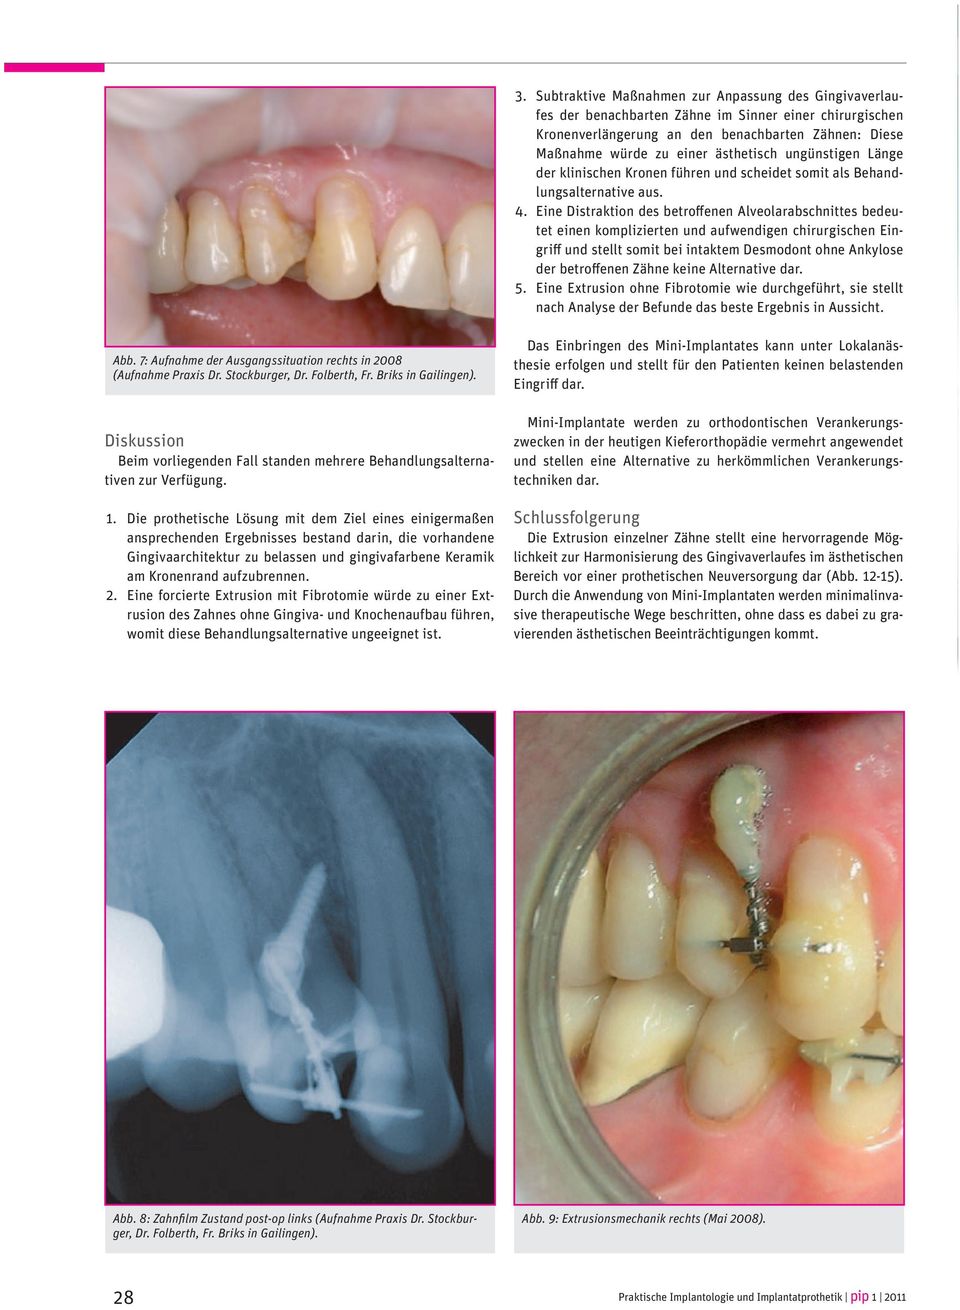 Eine Distraktion des betroffenen Alveolarabschnittes bedeutet einen komplizierten und aufwendigen chirurgischen Eingriff und stellt somit bei intaktem Desmodont ohne Ankylose der betroffenen Zähne